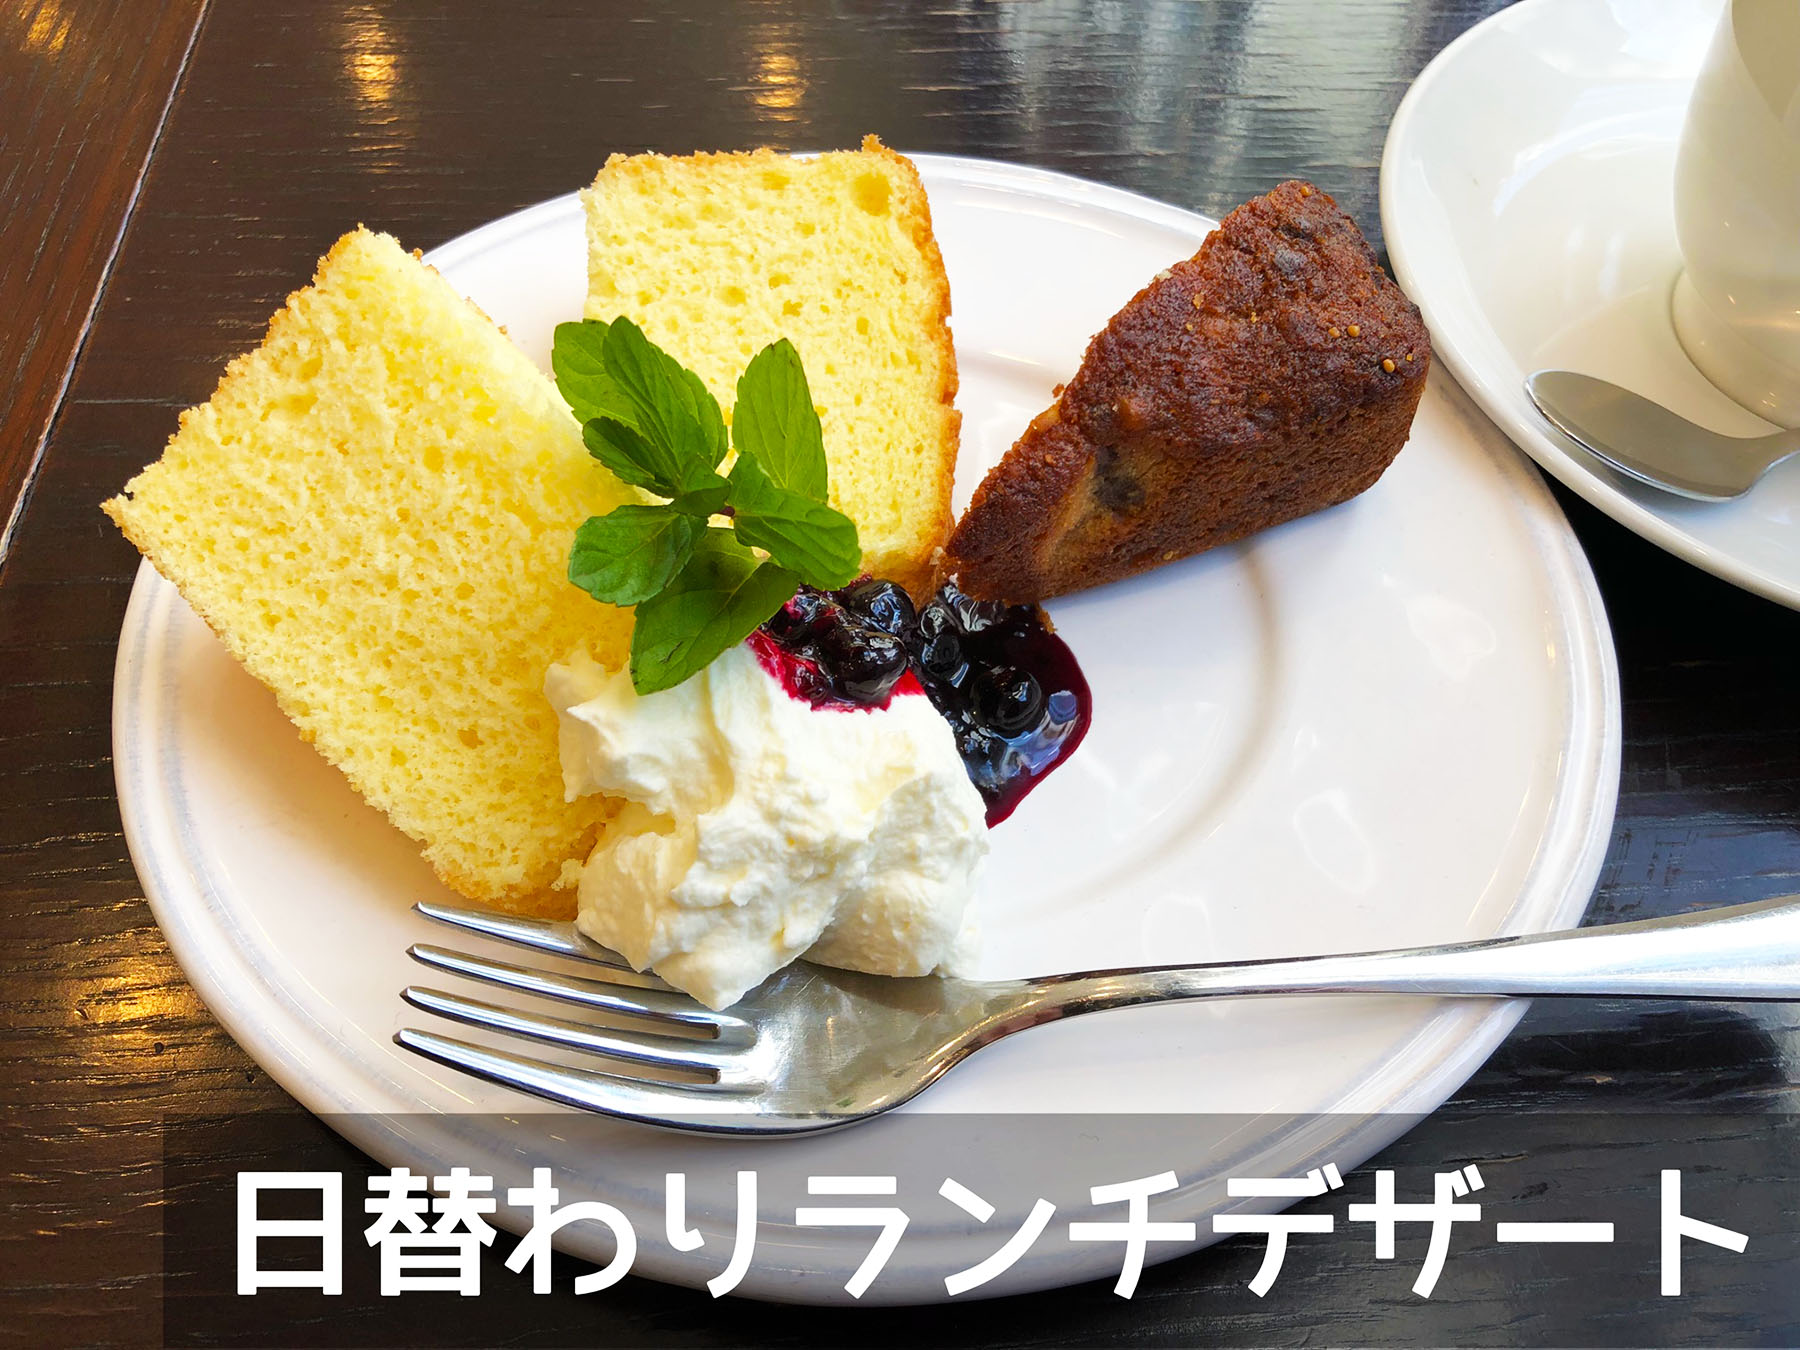 オモシロカフェの日替わりランチデザート